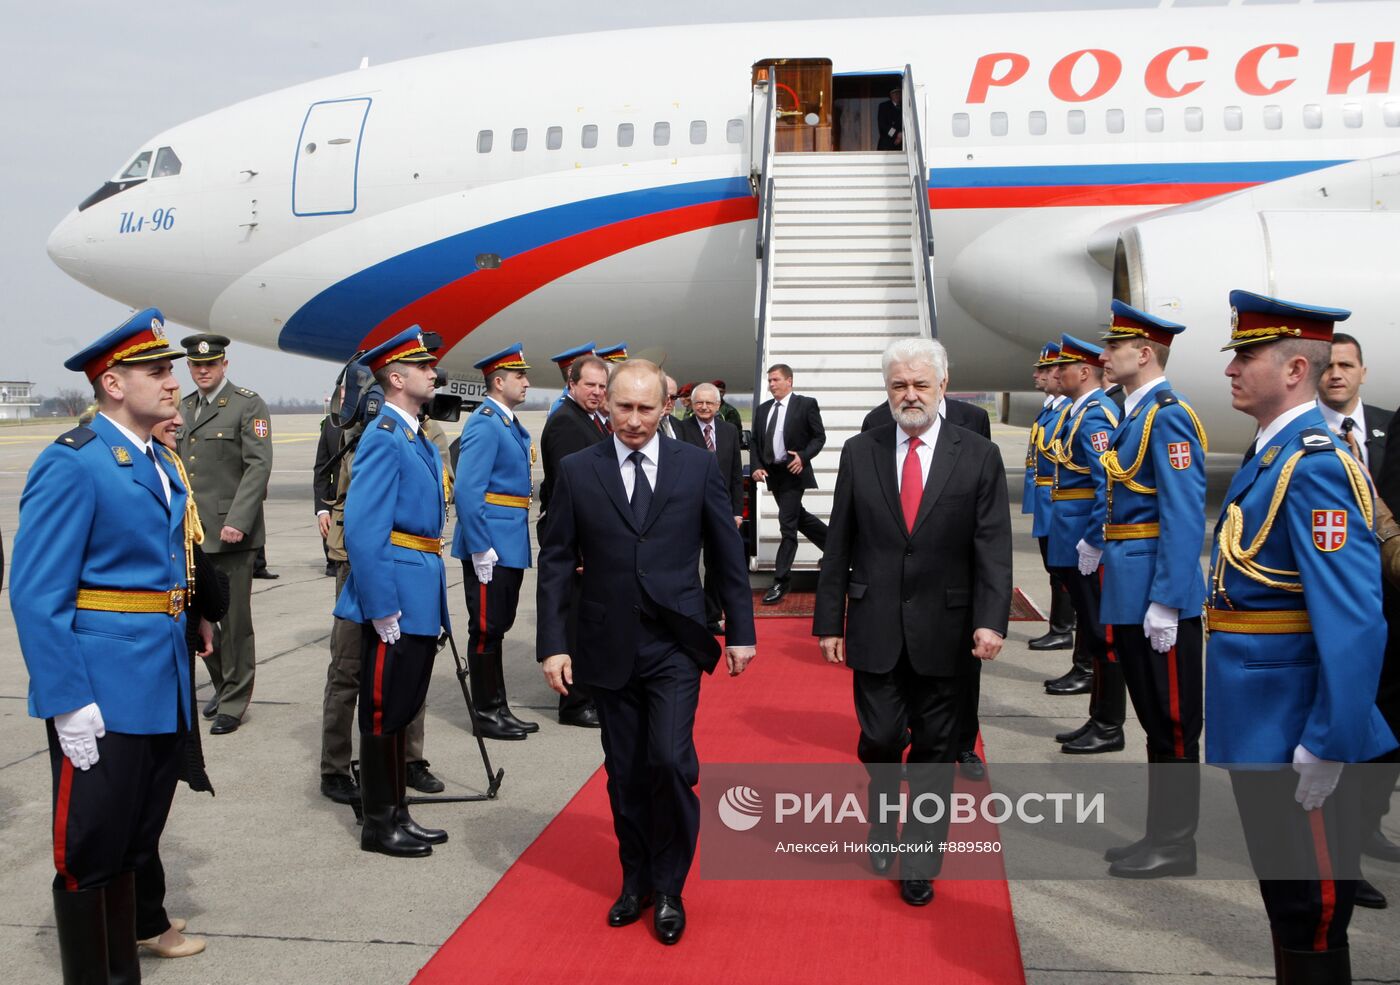 Рабочий визит Владимира Путина в Сербию